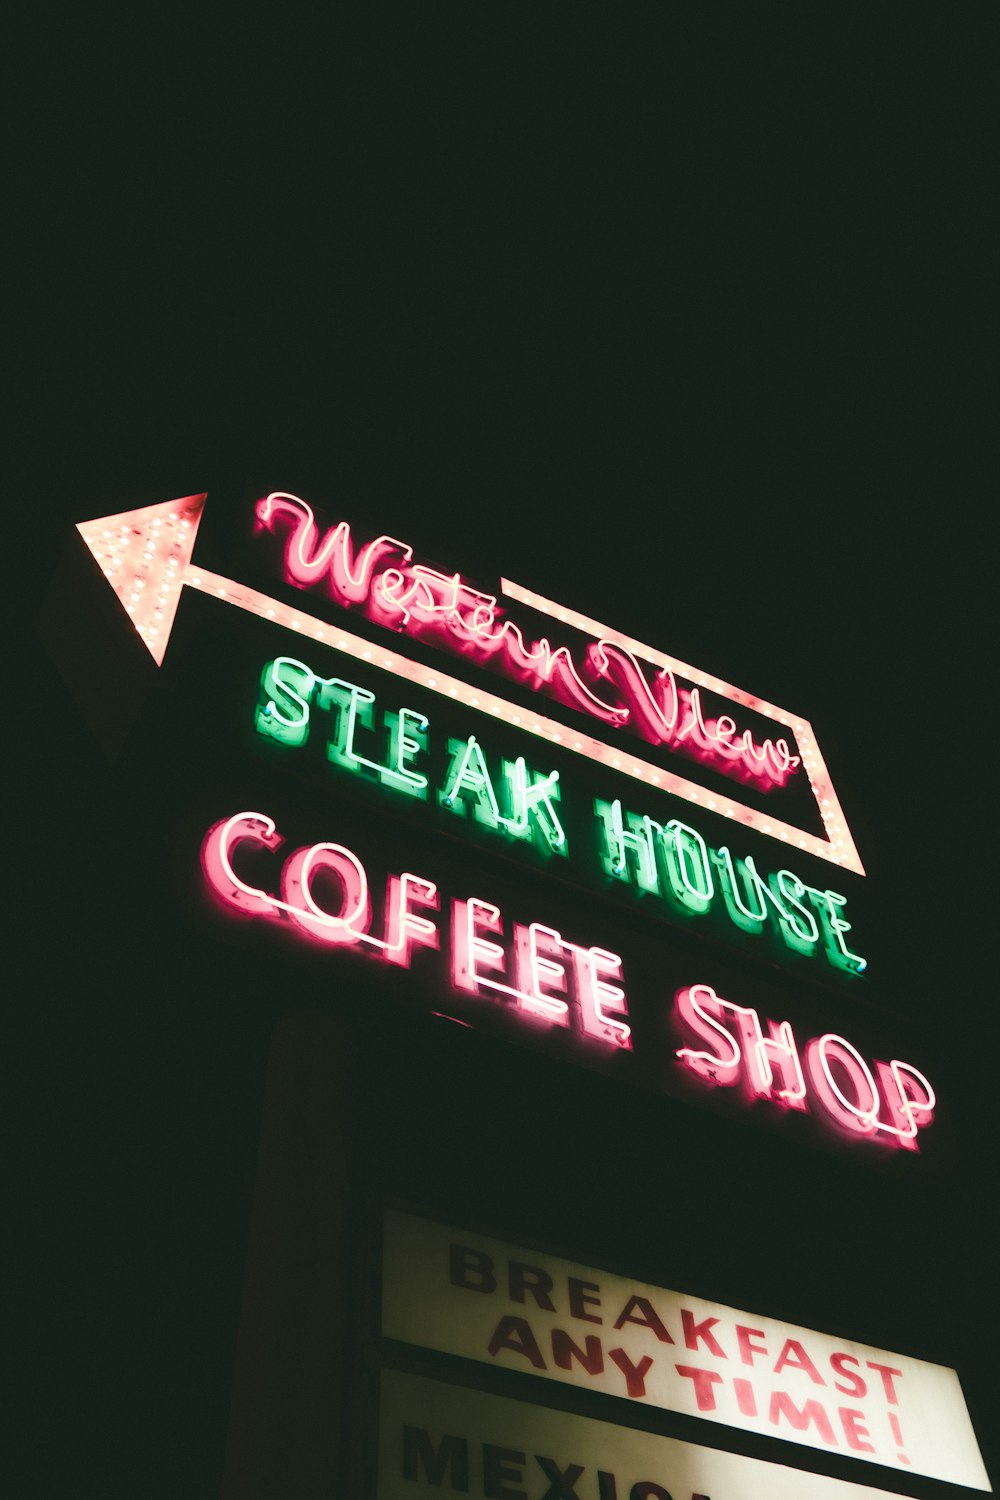 웨스턴 뷰 스테이크 하우스 커피 숍 네온 사인의 로우 앵글 사진 밤에 켜짐